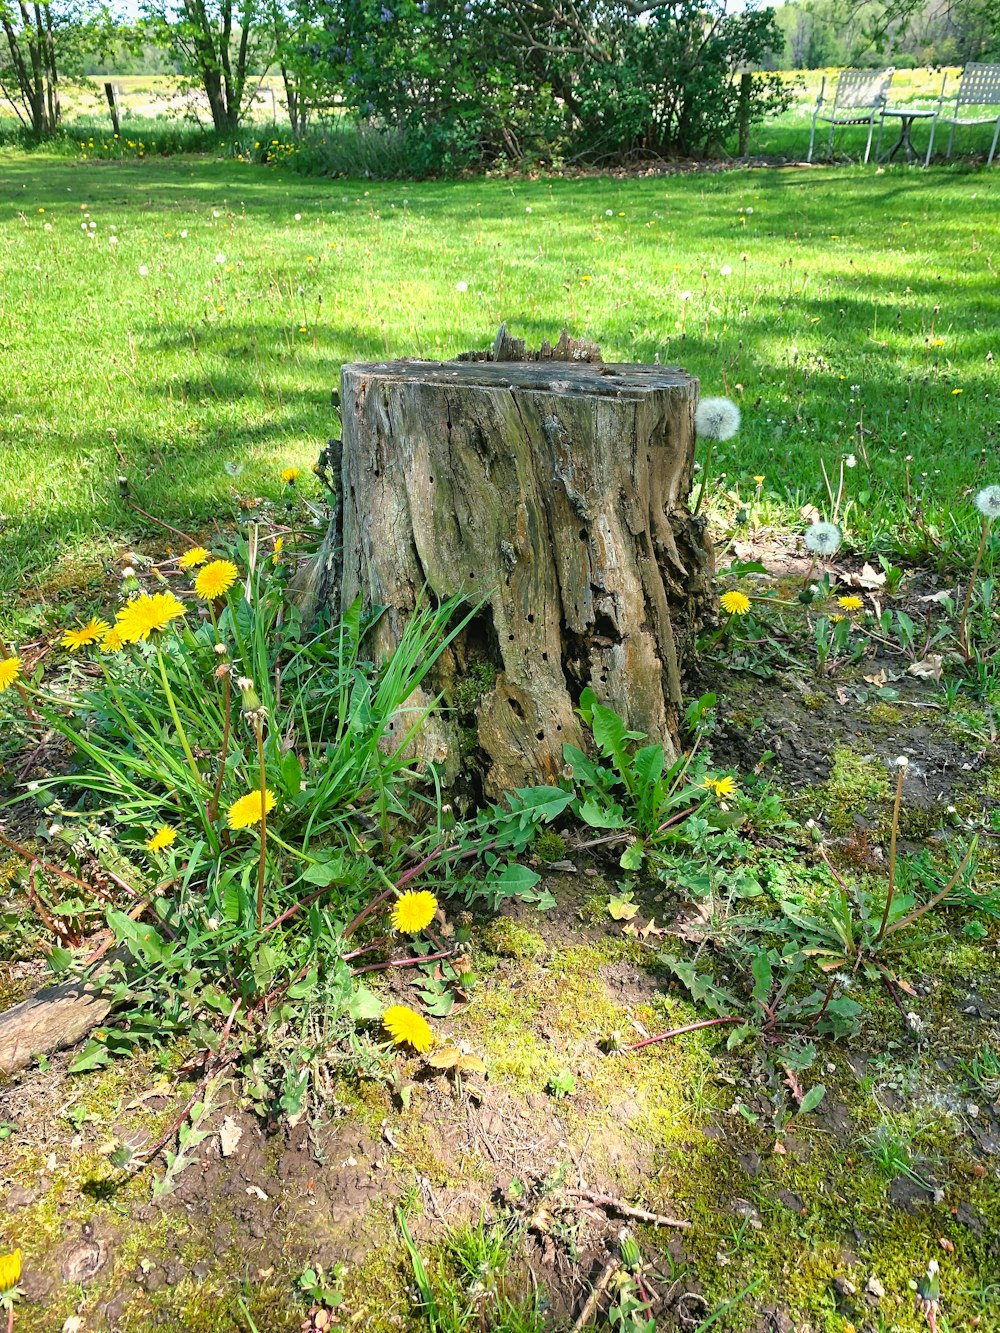 a stump in a grassy field